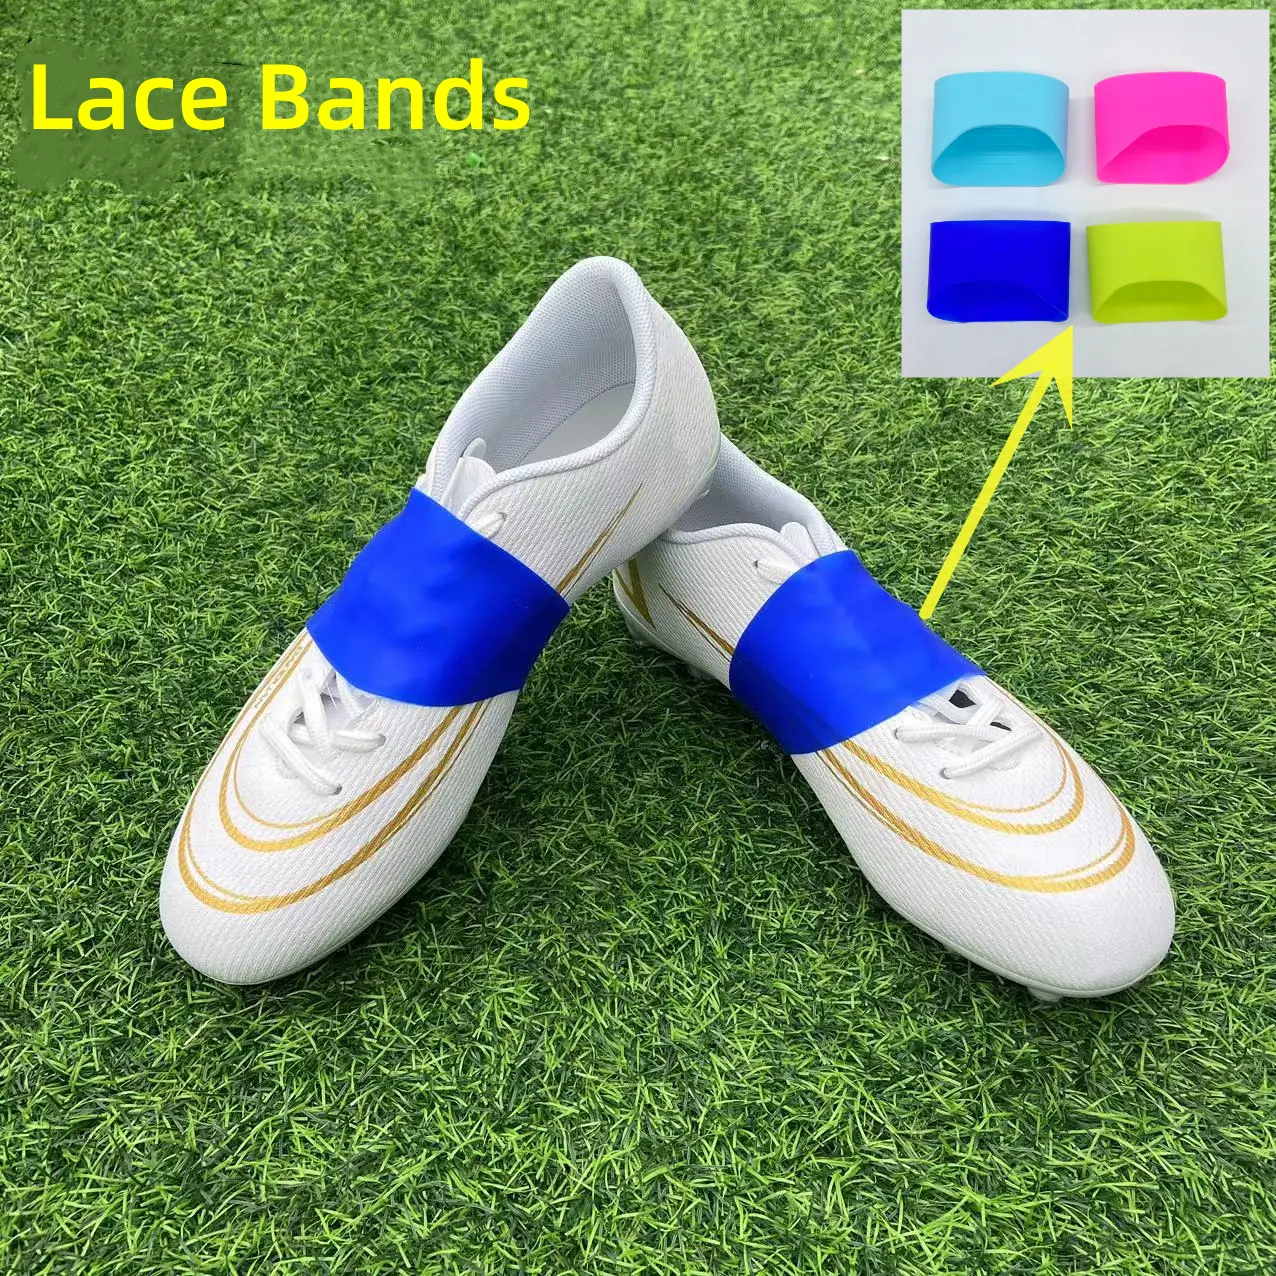 Özel Logo futbol futbol eğitimi aksesuarları ayakabı Cleat ayakkabı dantel bantları çocuklar için